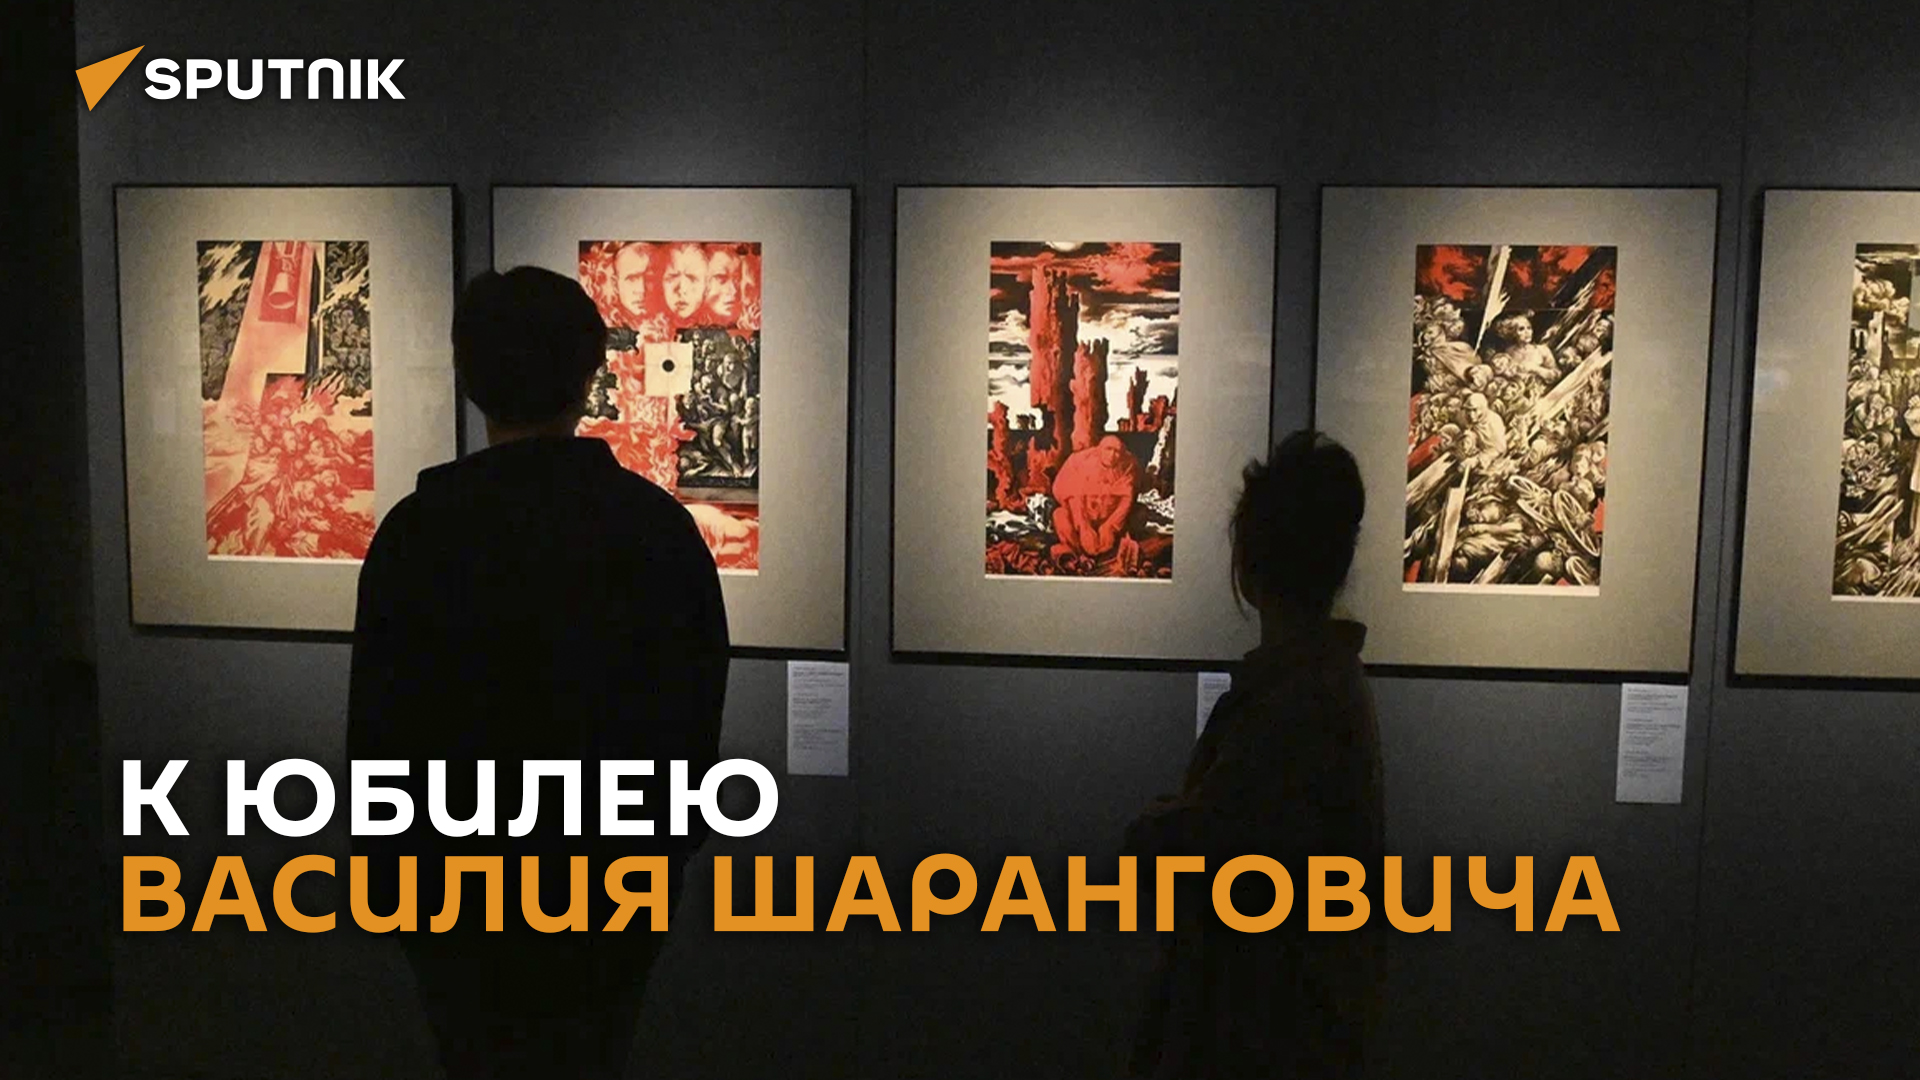 Выставка к 85-летию художника Василия Шаранговича  проходит в Минске